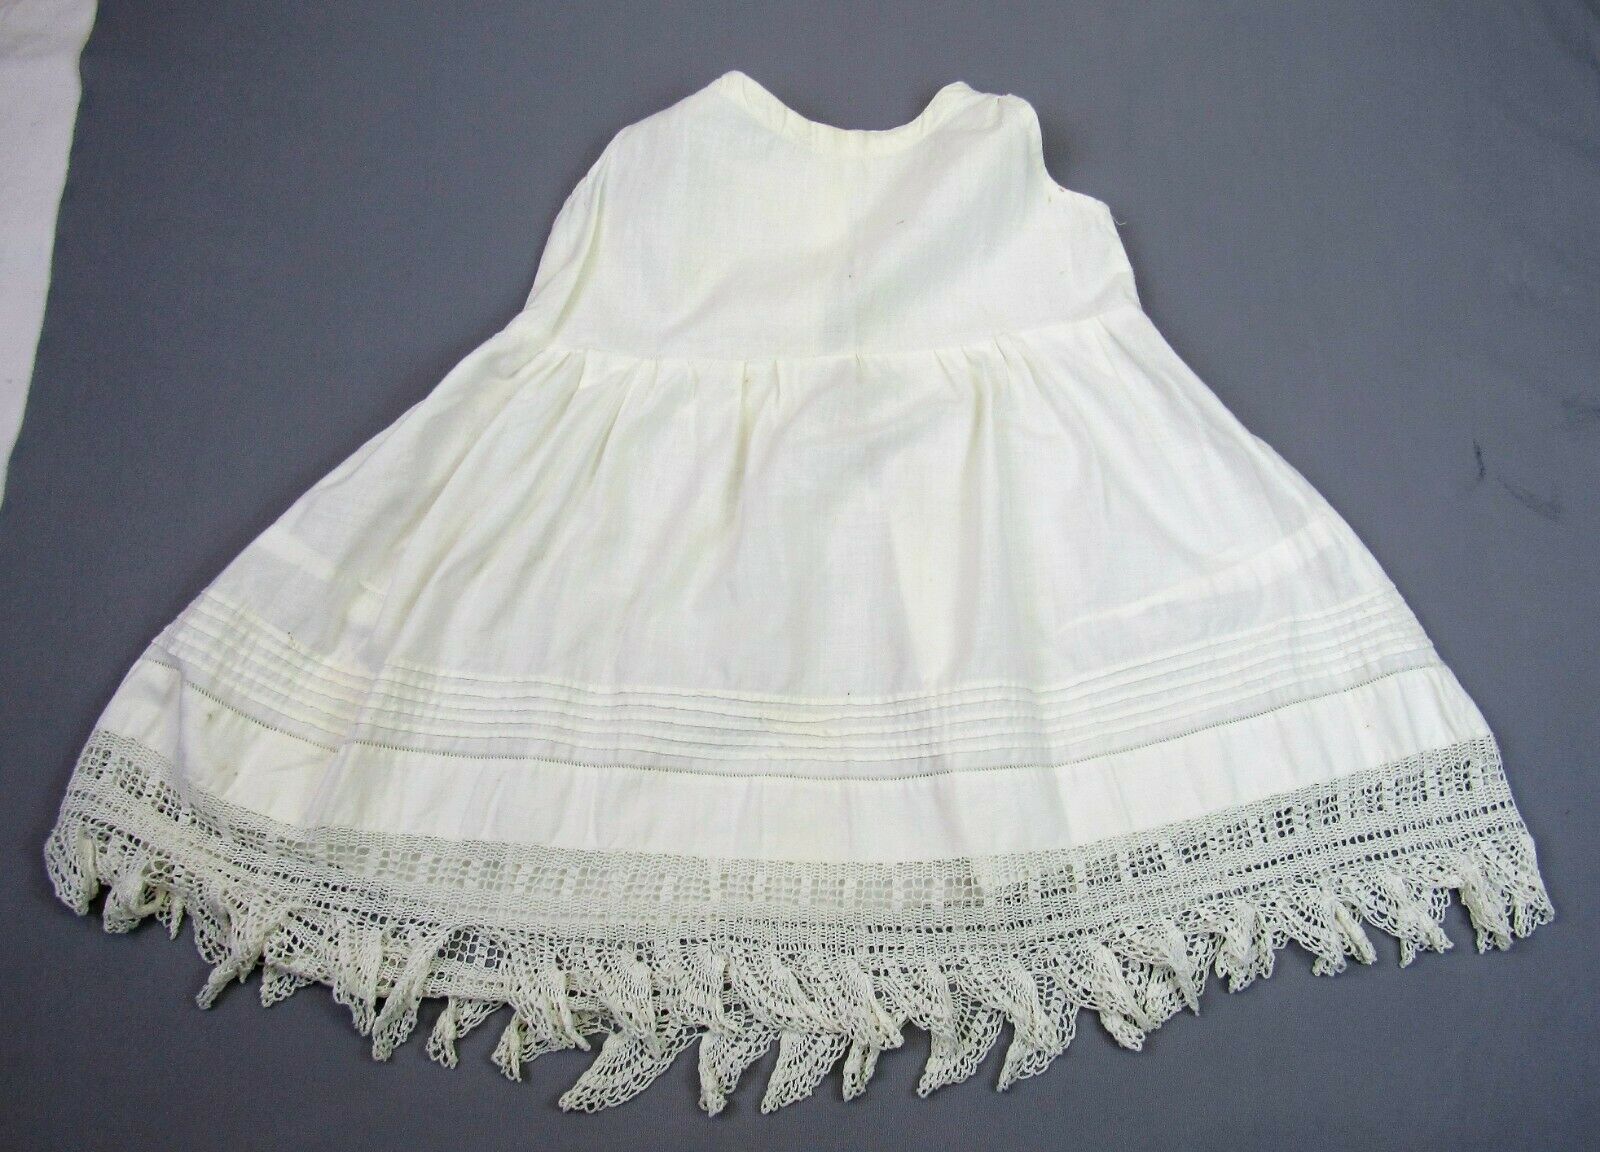 Antique Baby Petticoat Slip Vintage Cotton Toddler Dress Crochet Lace